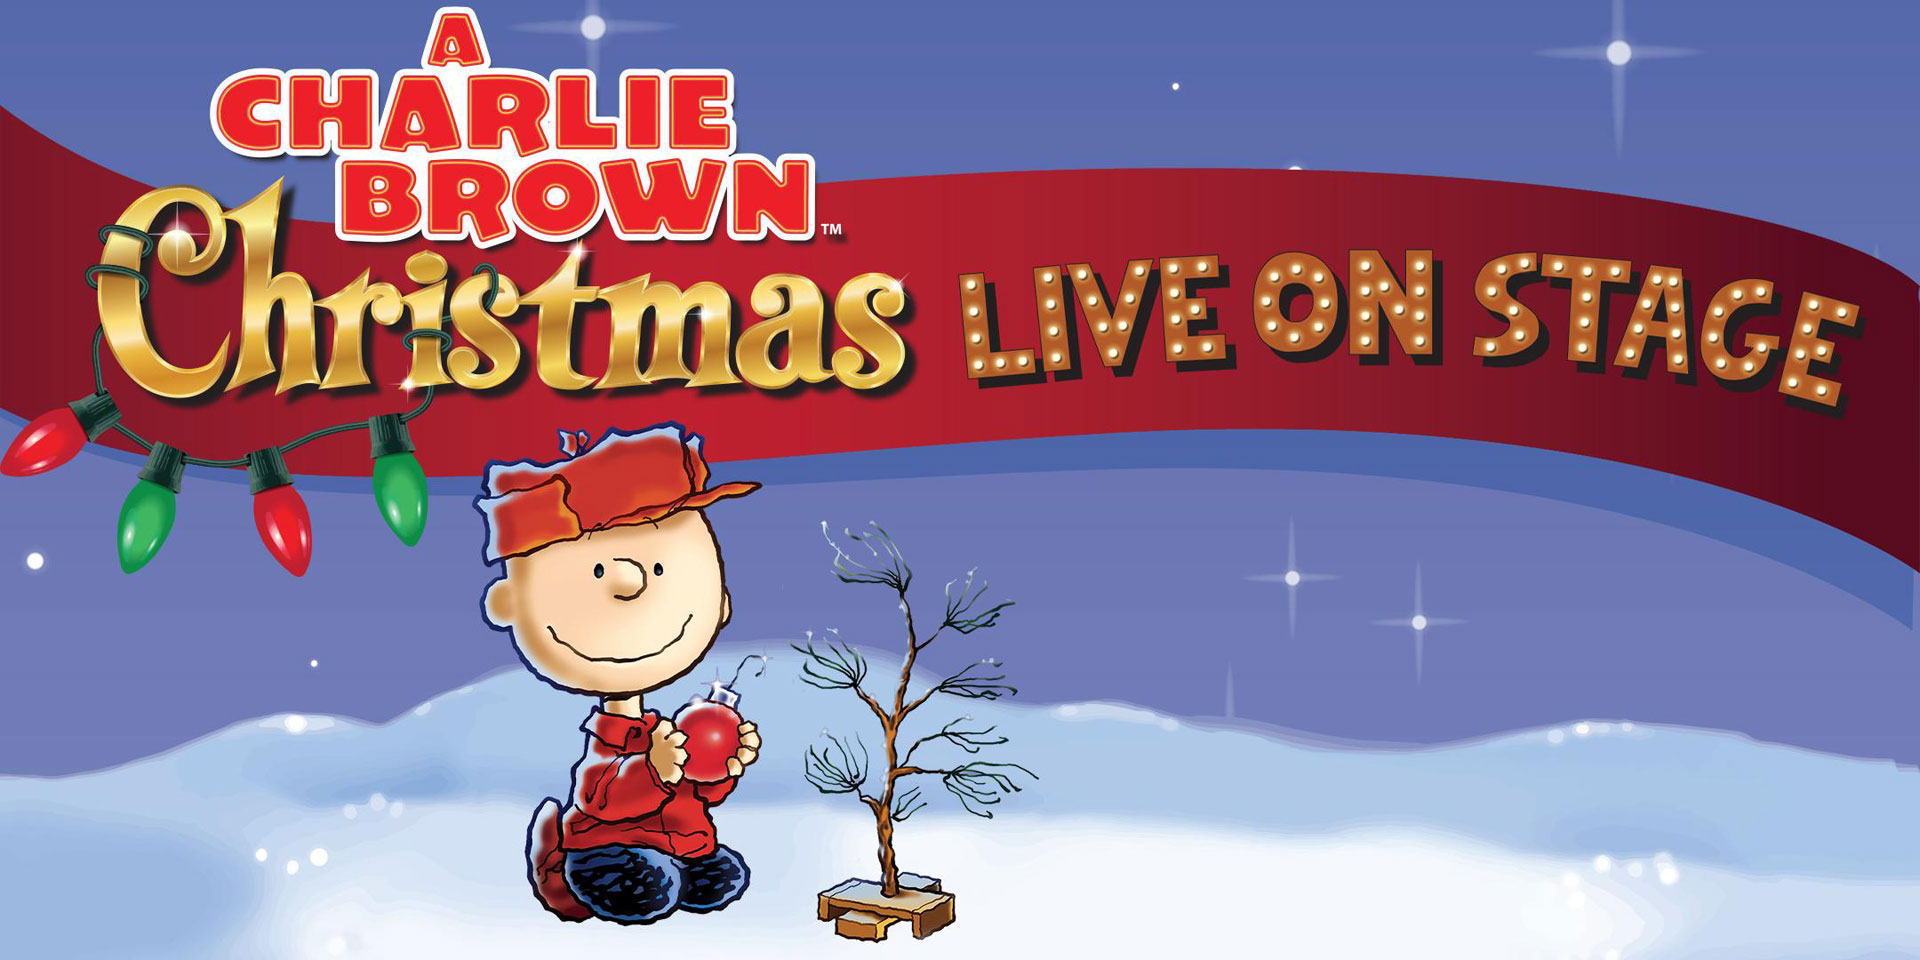 Charlie-Brown-Christmas-Live-On-Stage